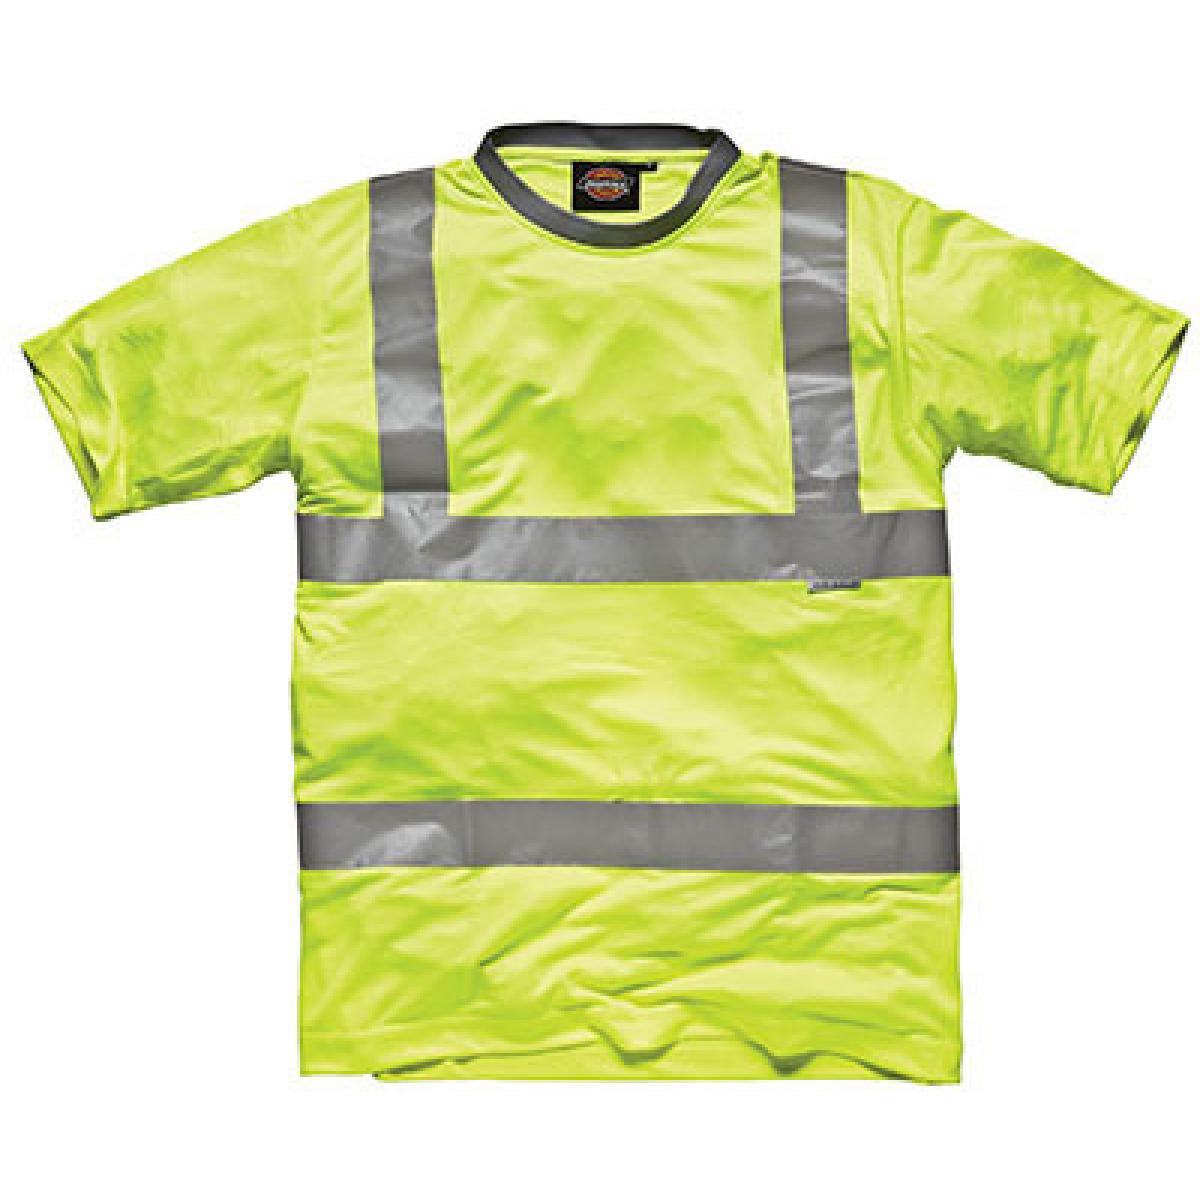 Hersteller: Dickies Herstellernummer: SA22080 Artikelbezeichnung: Hochsichtbares T-Shirt - SA22080 | EN471, Klasse 2 Farbe: Saturn Yellow